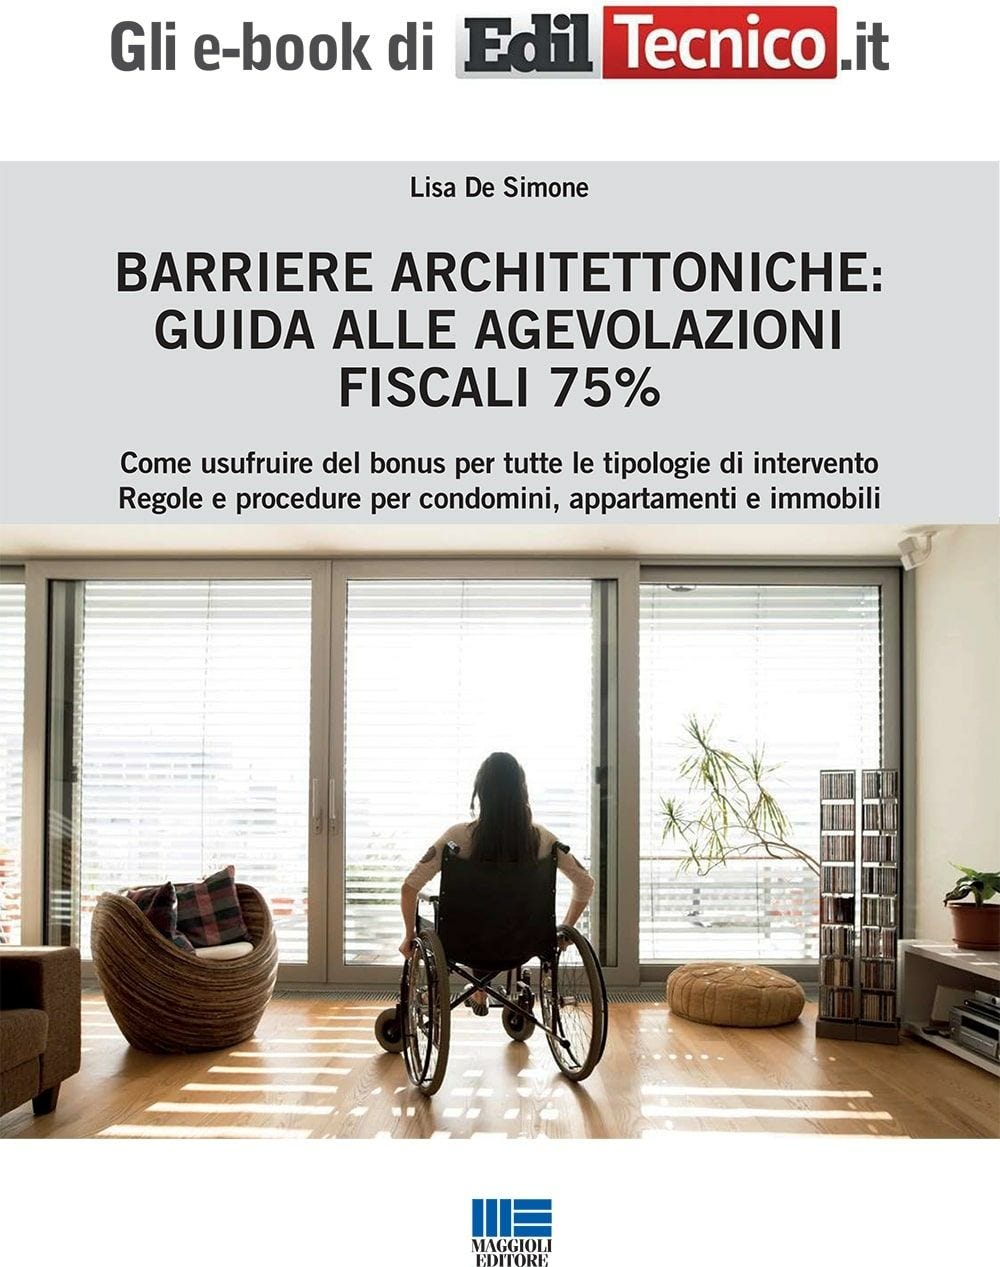 Barriere architettoniche: guida alle agevolazioni fiscali 75% - eBook in pdf